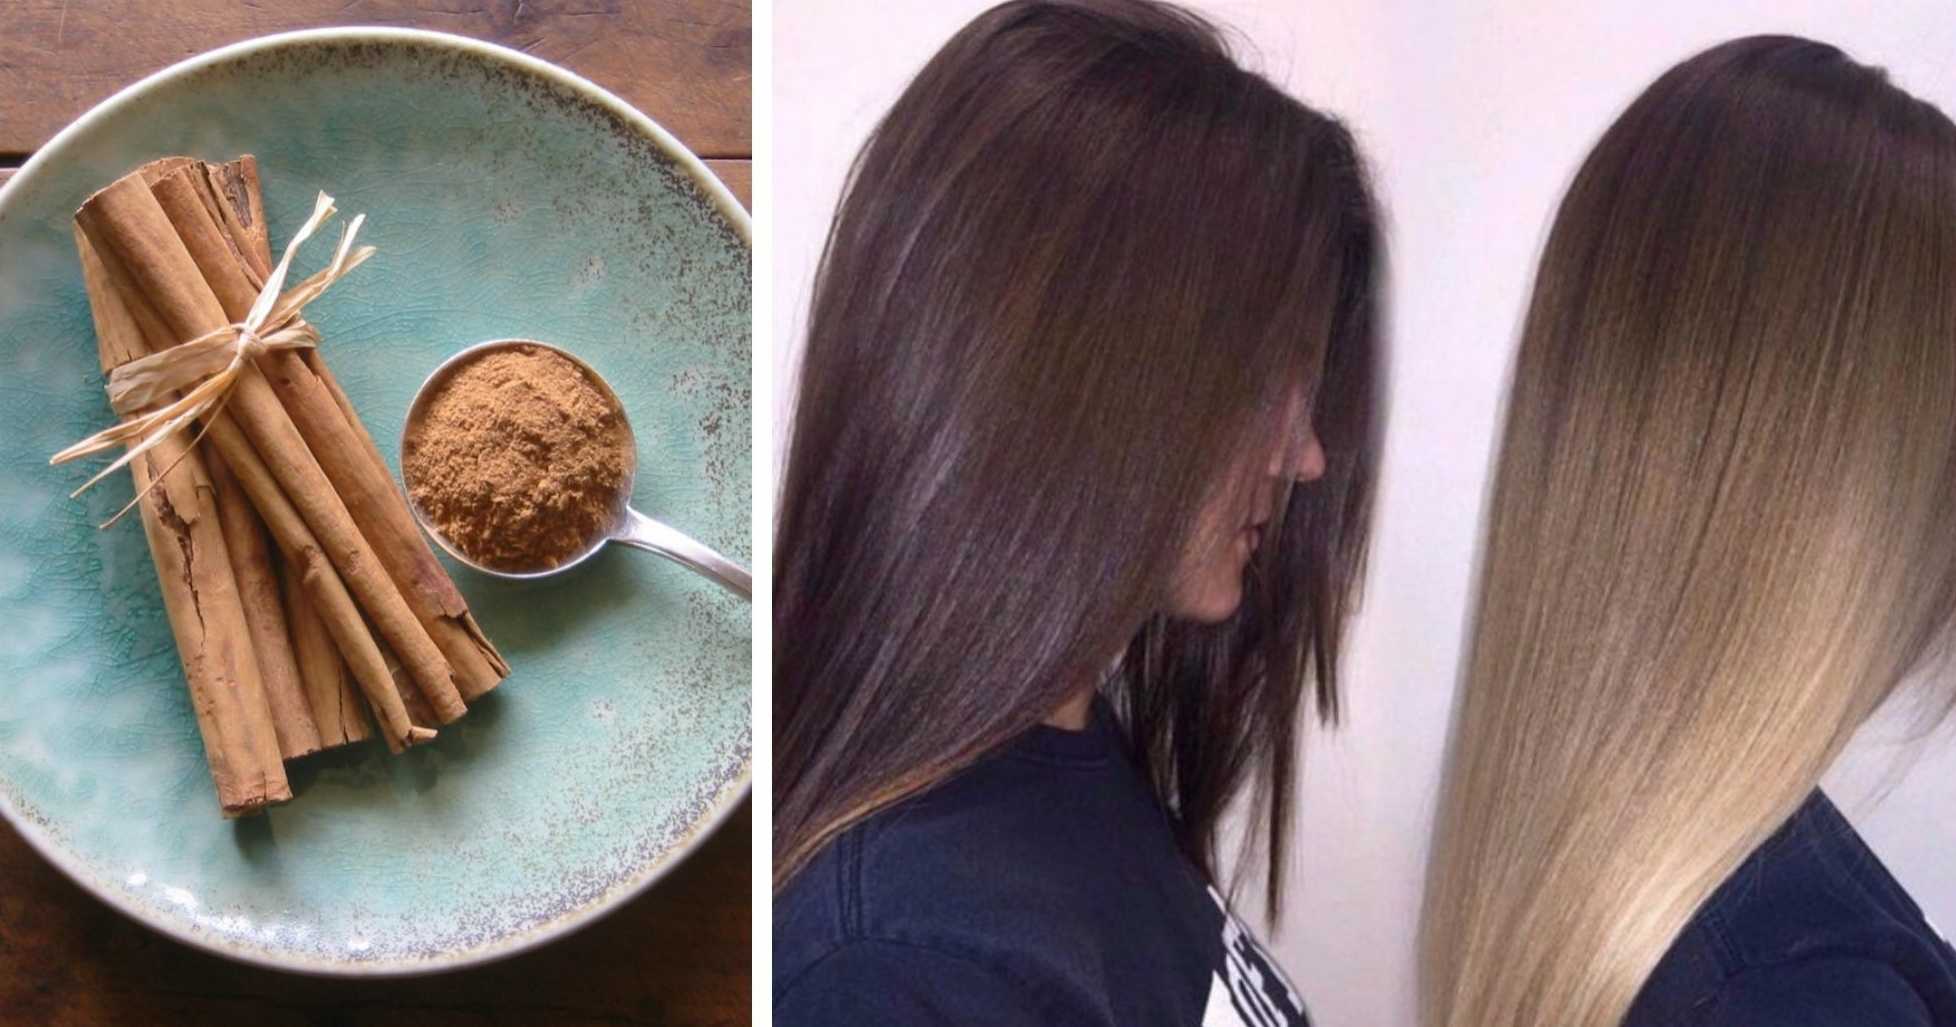 Осветление волос корицей — фото до и после